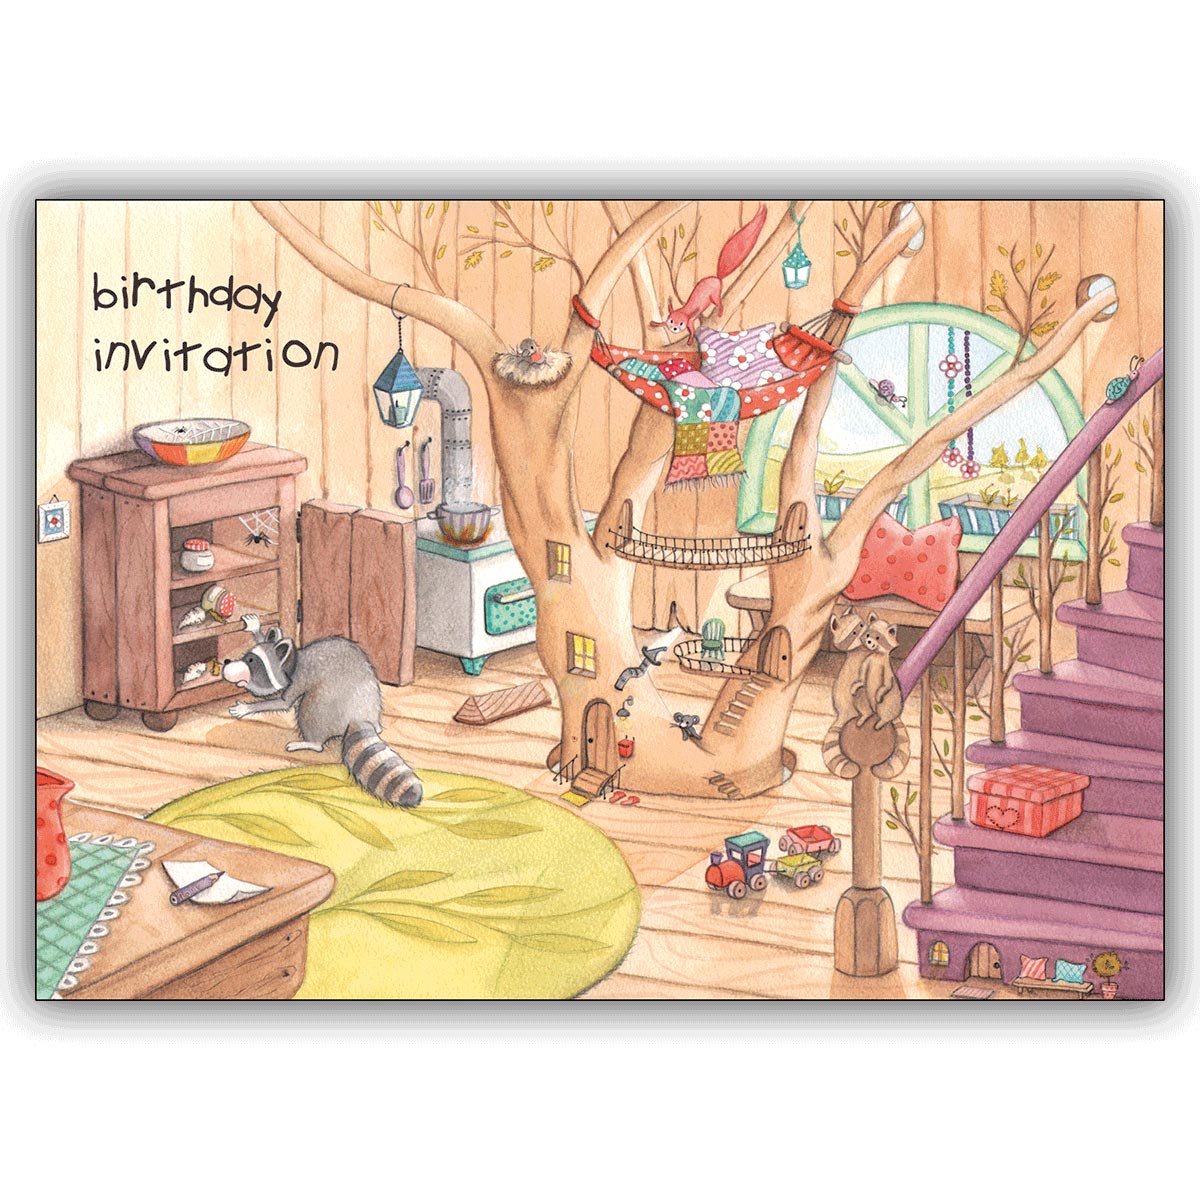 Süße Kinder Geburtstags Einladungskarte vom Waschbären: Birthday Invitation